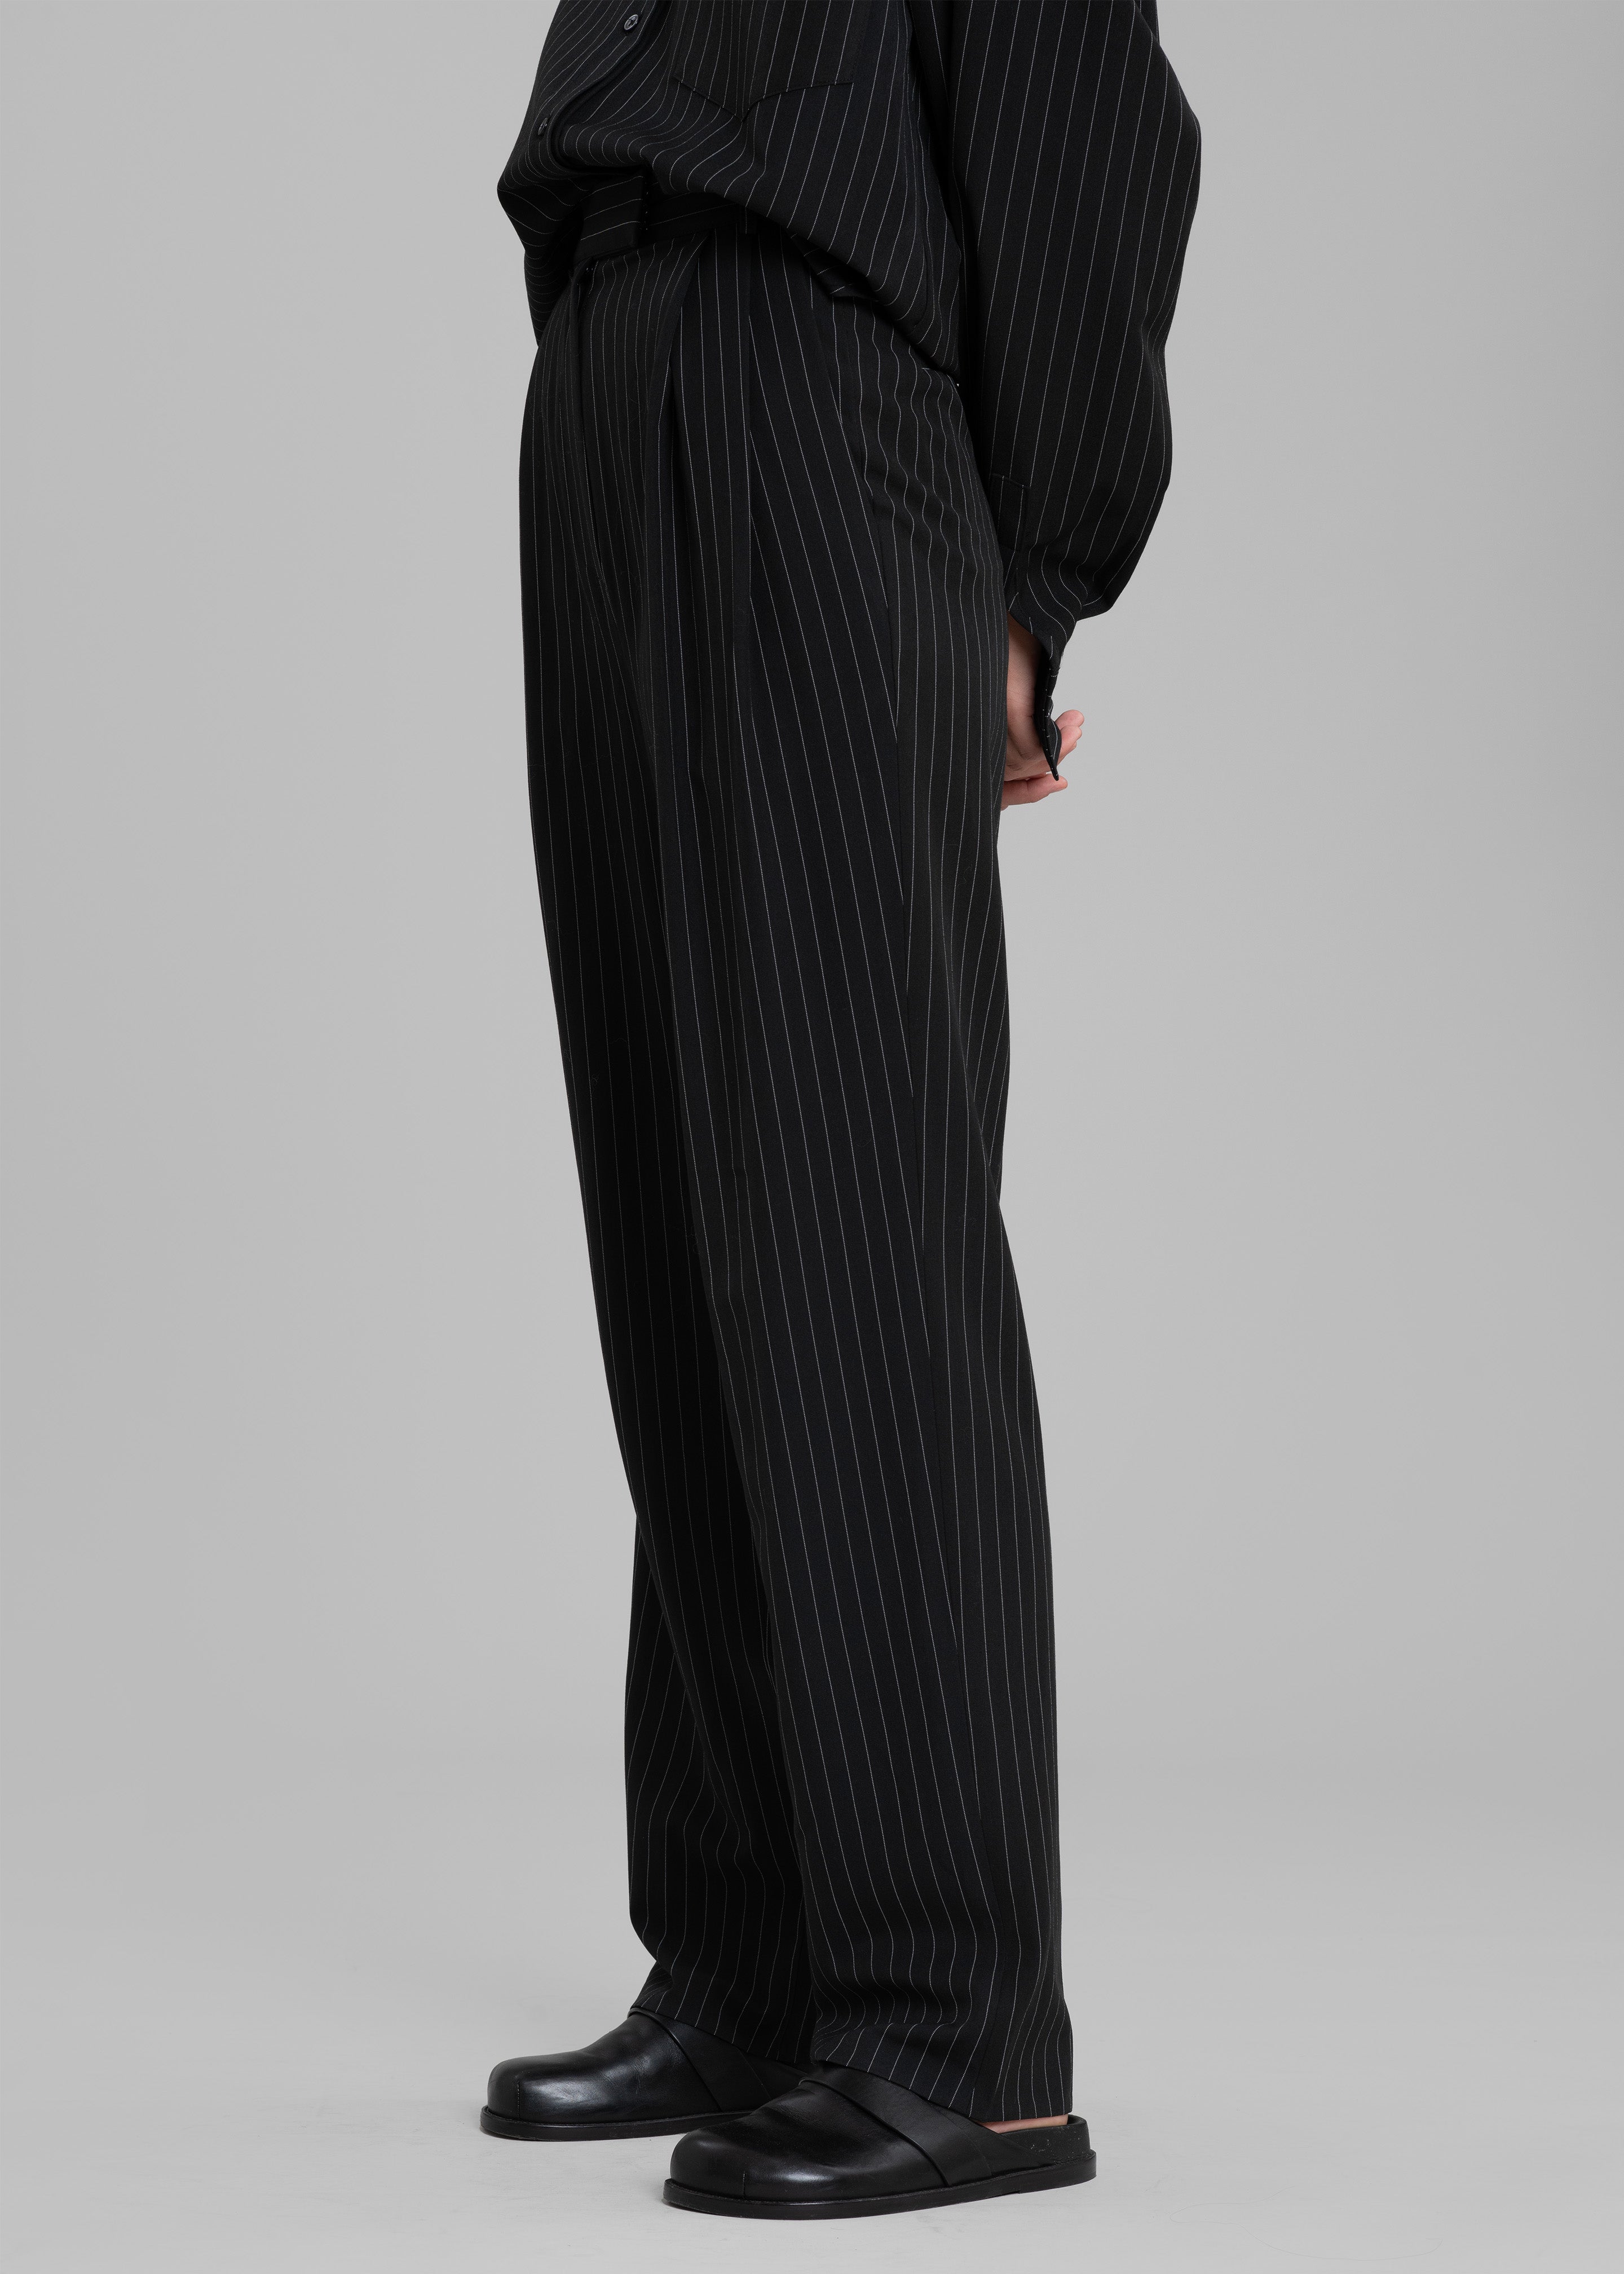 The Frankie Shop Bea Suit Pants - Black